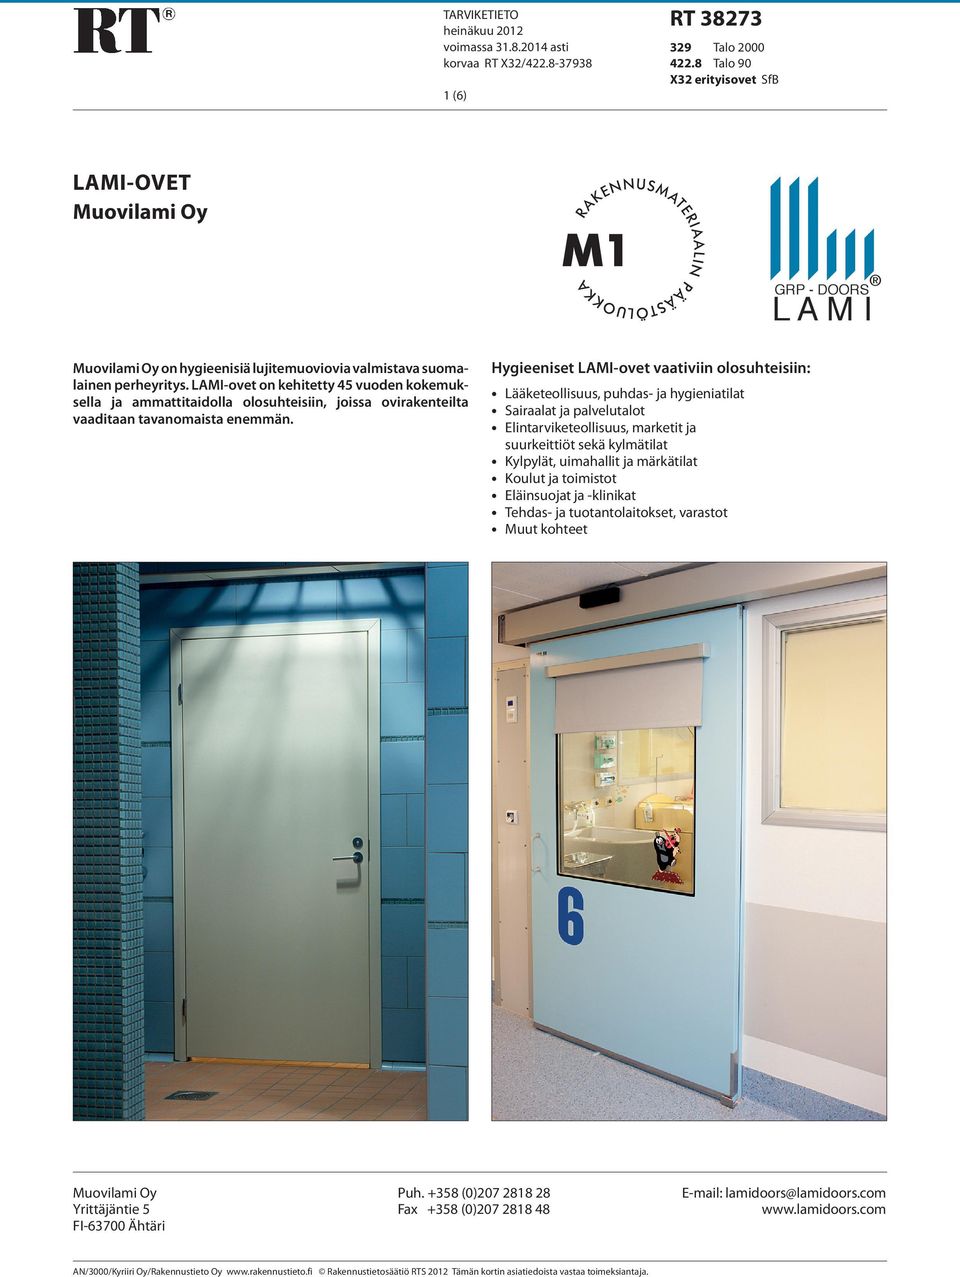 LAMI-ovet on kehitetty 45 vuoden kokemuksella ja ammattitaidolla olosuhteisiin, joissa ovirakenteilta vaaditaan tavanomaista enemmän.